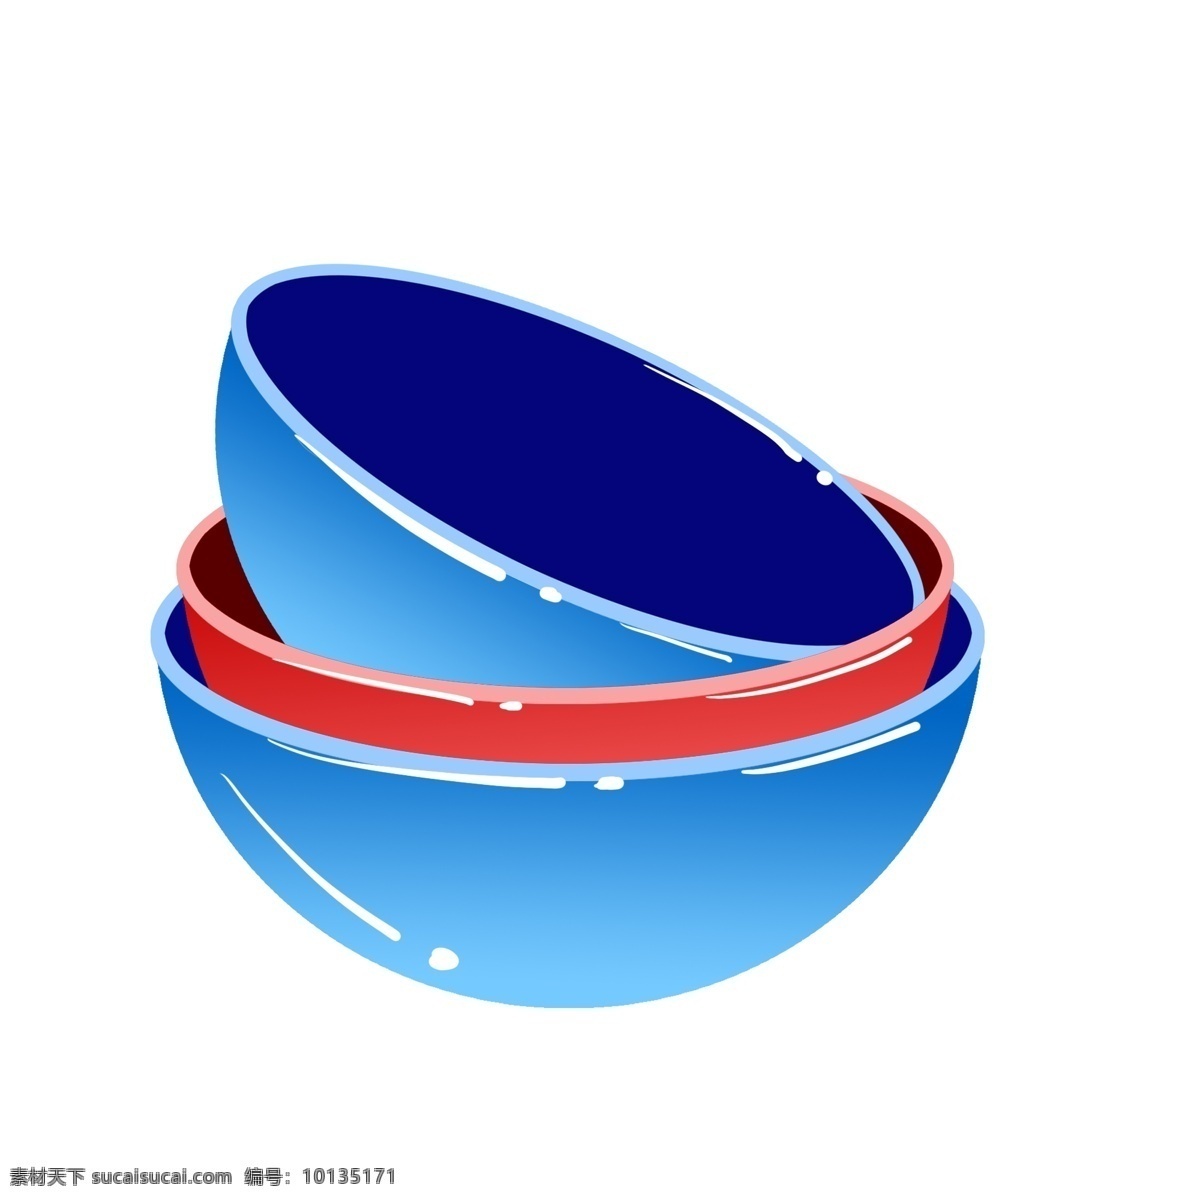 彩色 小 碗 装饰 插画 彩色的小碗 漂亮的小碗 创意小碗 小碗装饰 小碗插画 立体小碗 可爱的小碗